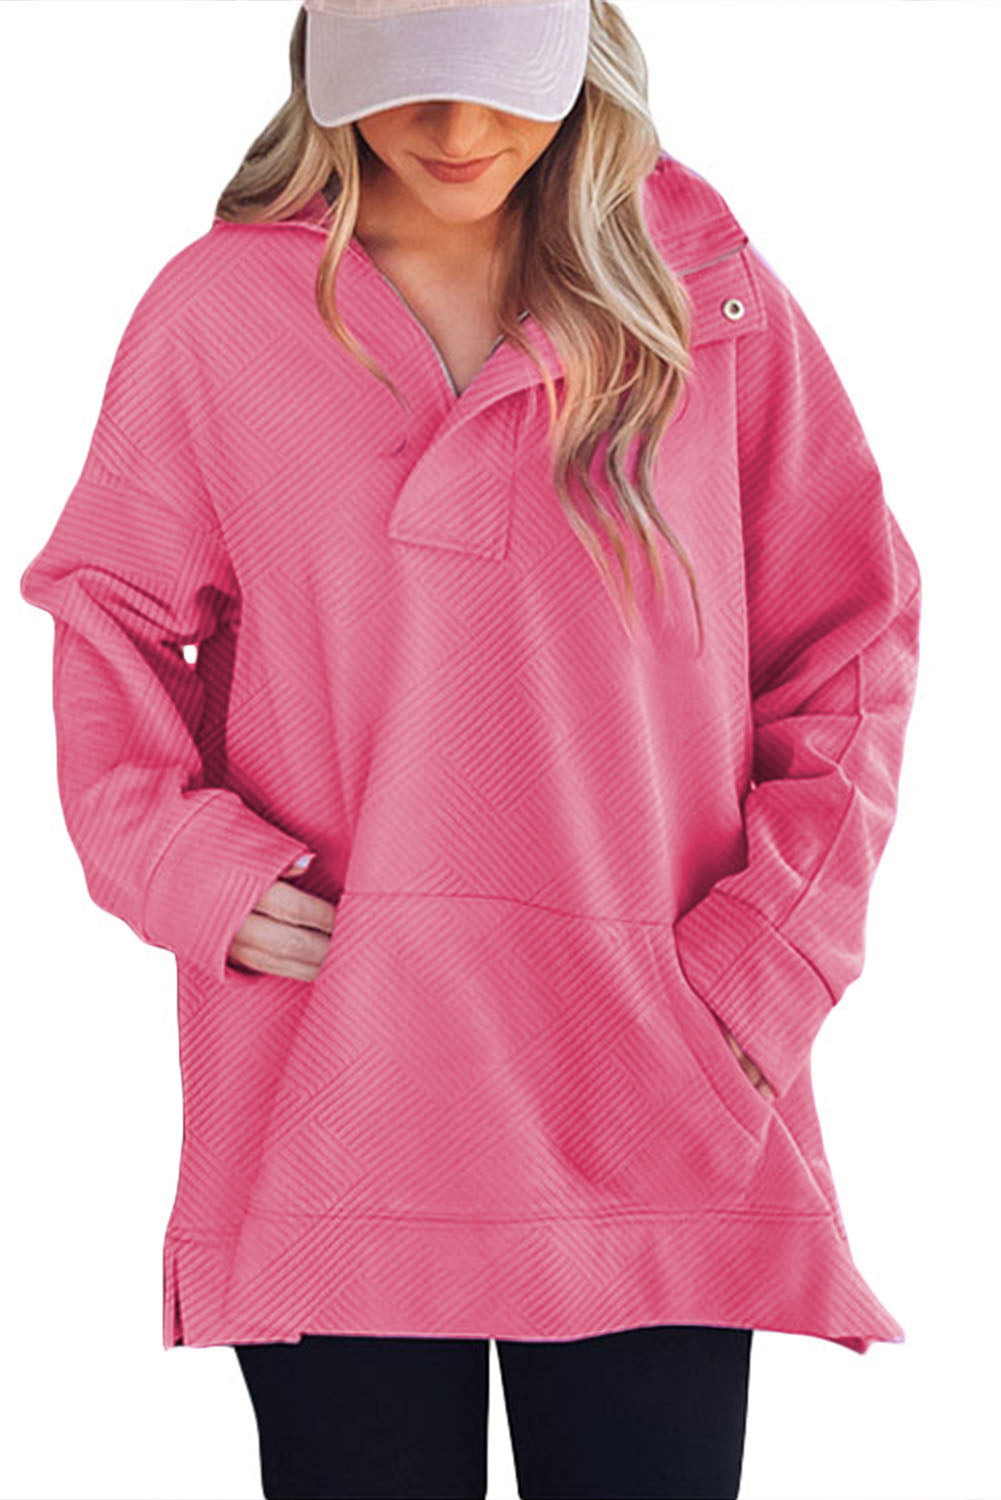 Sweat-shirt texturé rose vif à encolure zippée et poche kangourou